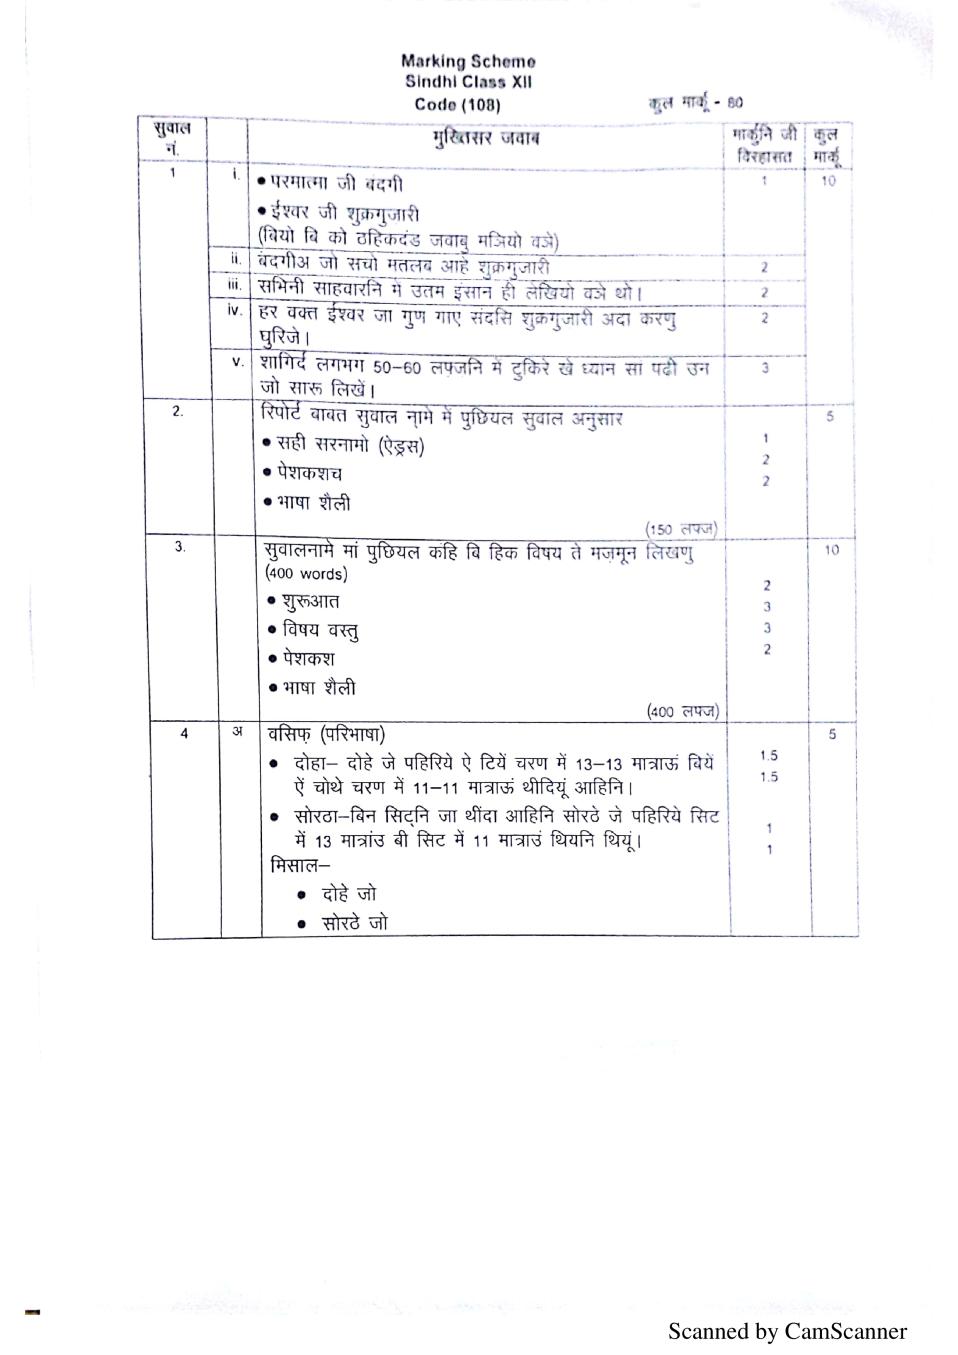 CBSE Class 12 Marking Scheme 2020 for Sindhi - Page 1